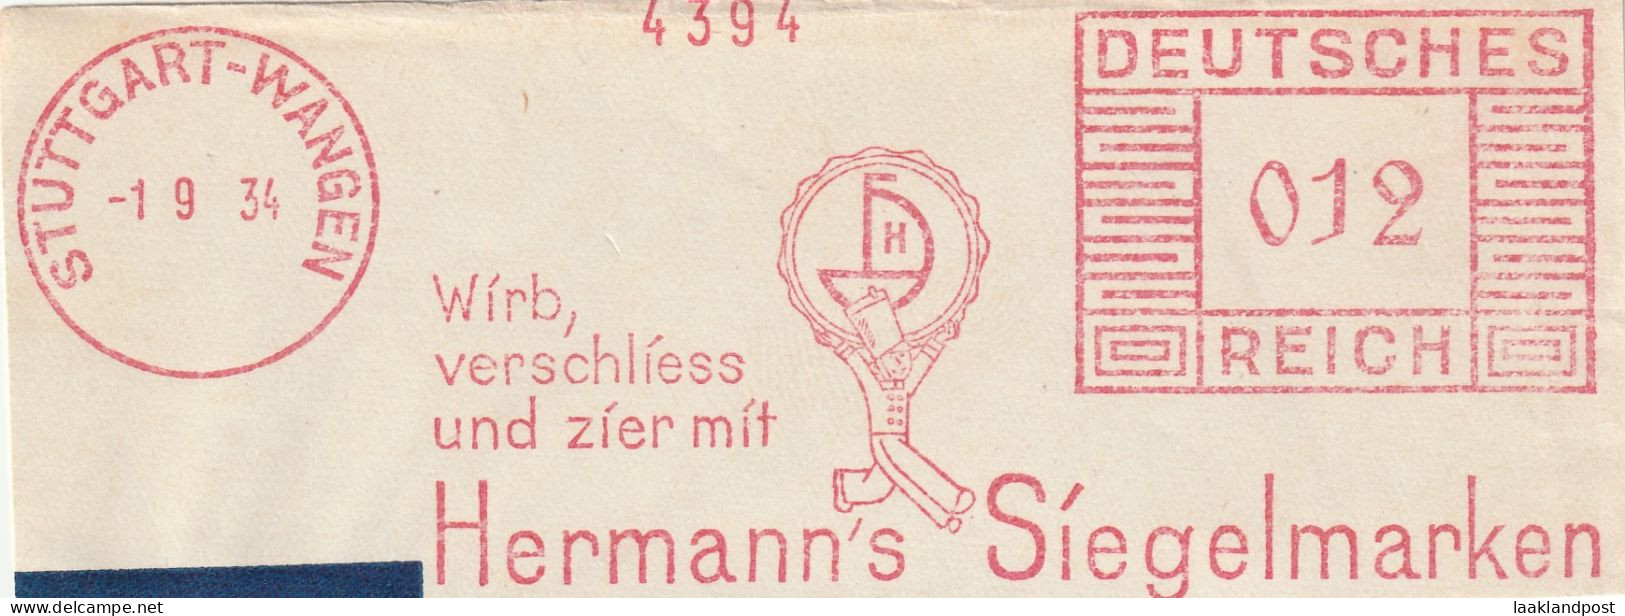 Deutsche Reichpost Nice Cut Meter Freistempel  Wirb, Verschliess Und Zier Miot Hermann's Siegelmarken, Stuttgart-Wangen - Frankeermachines